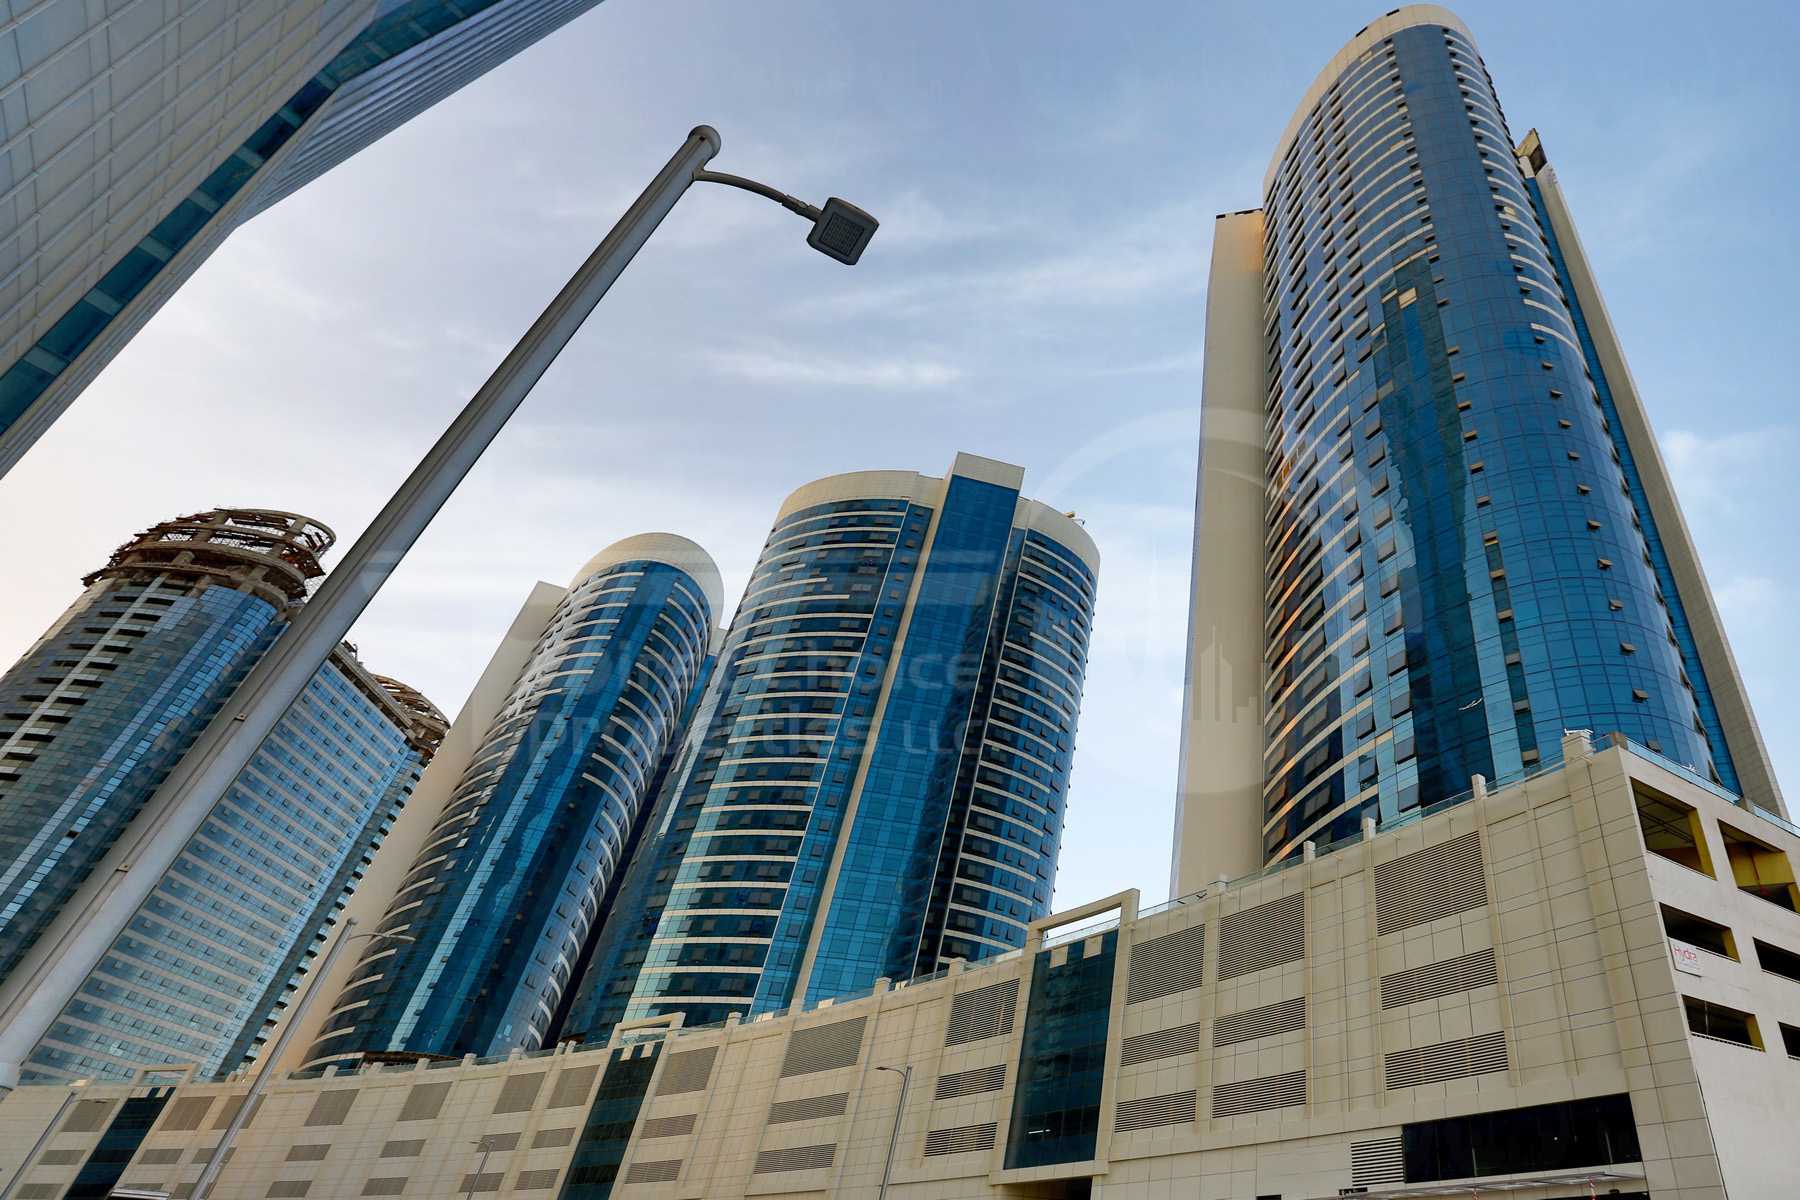 Studio - 1BR - 2BR - 3BR - 4BR Apartment - Abu Dhabi - UAE - Al Reem Island - Hydra Avenue - Outside View (24) - Copy.jpg